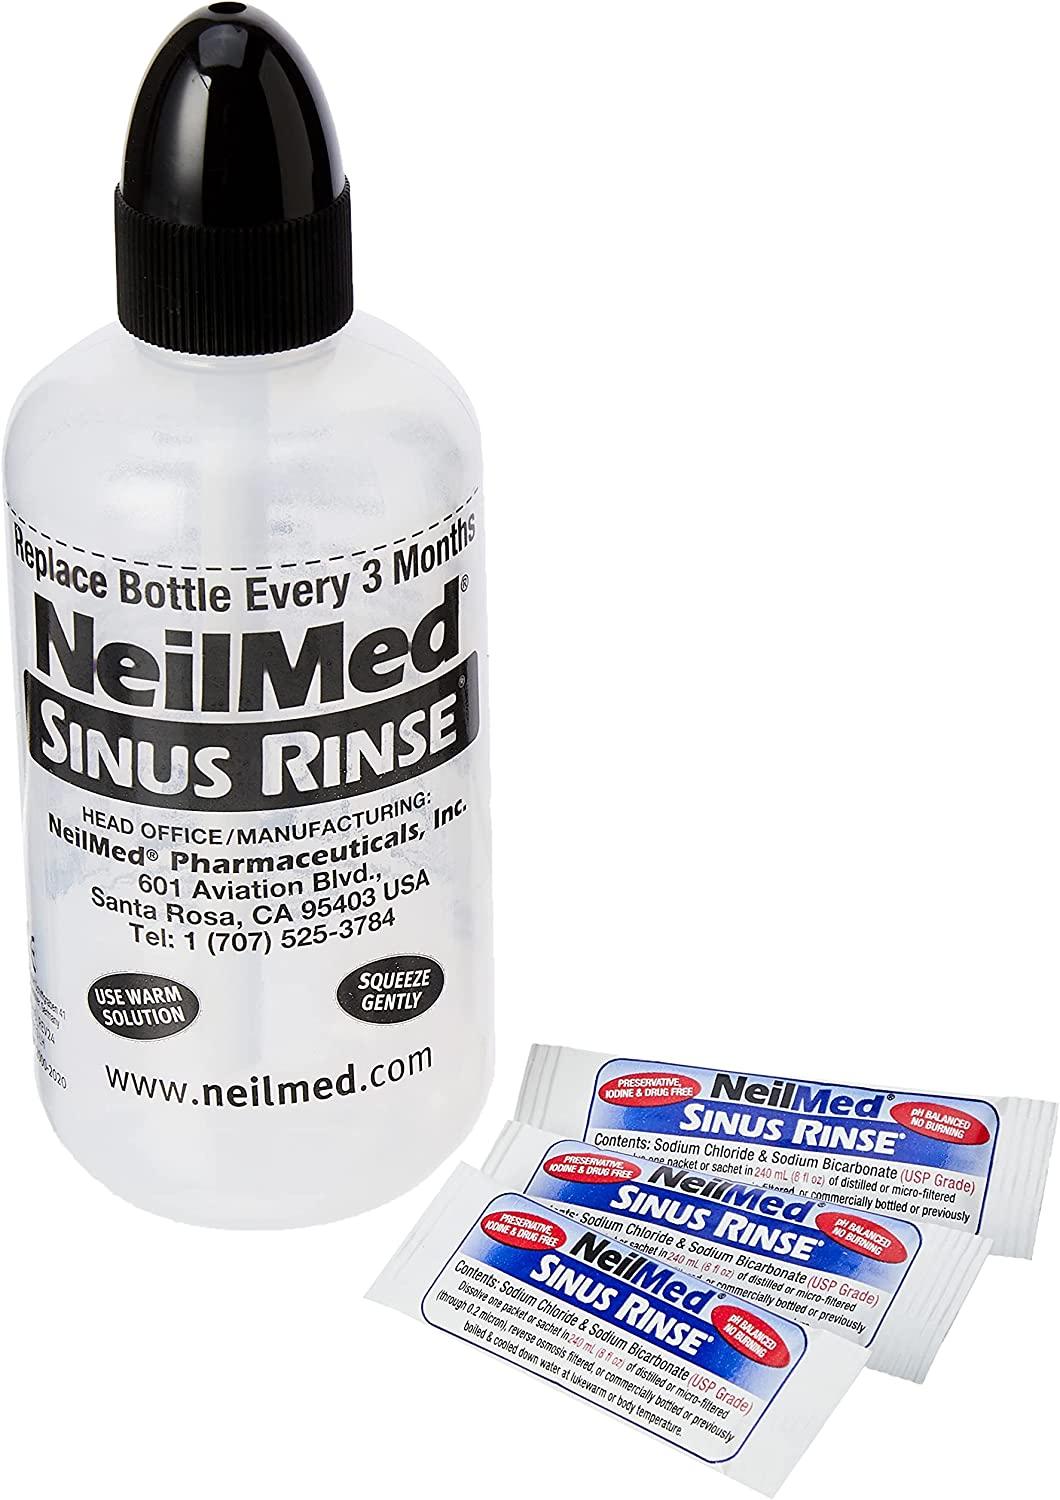 NeilMed Sinus Rinse Starter Kit - 5ct